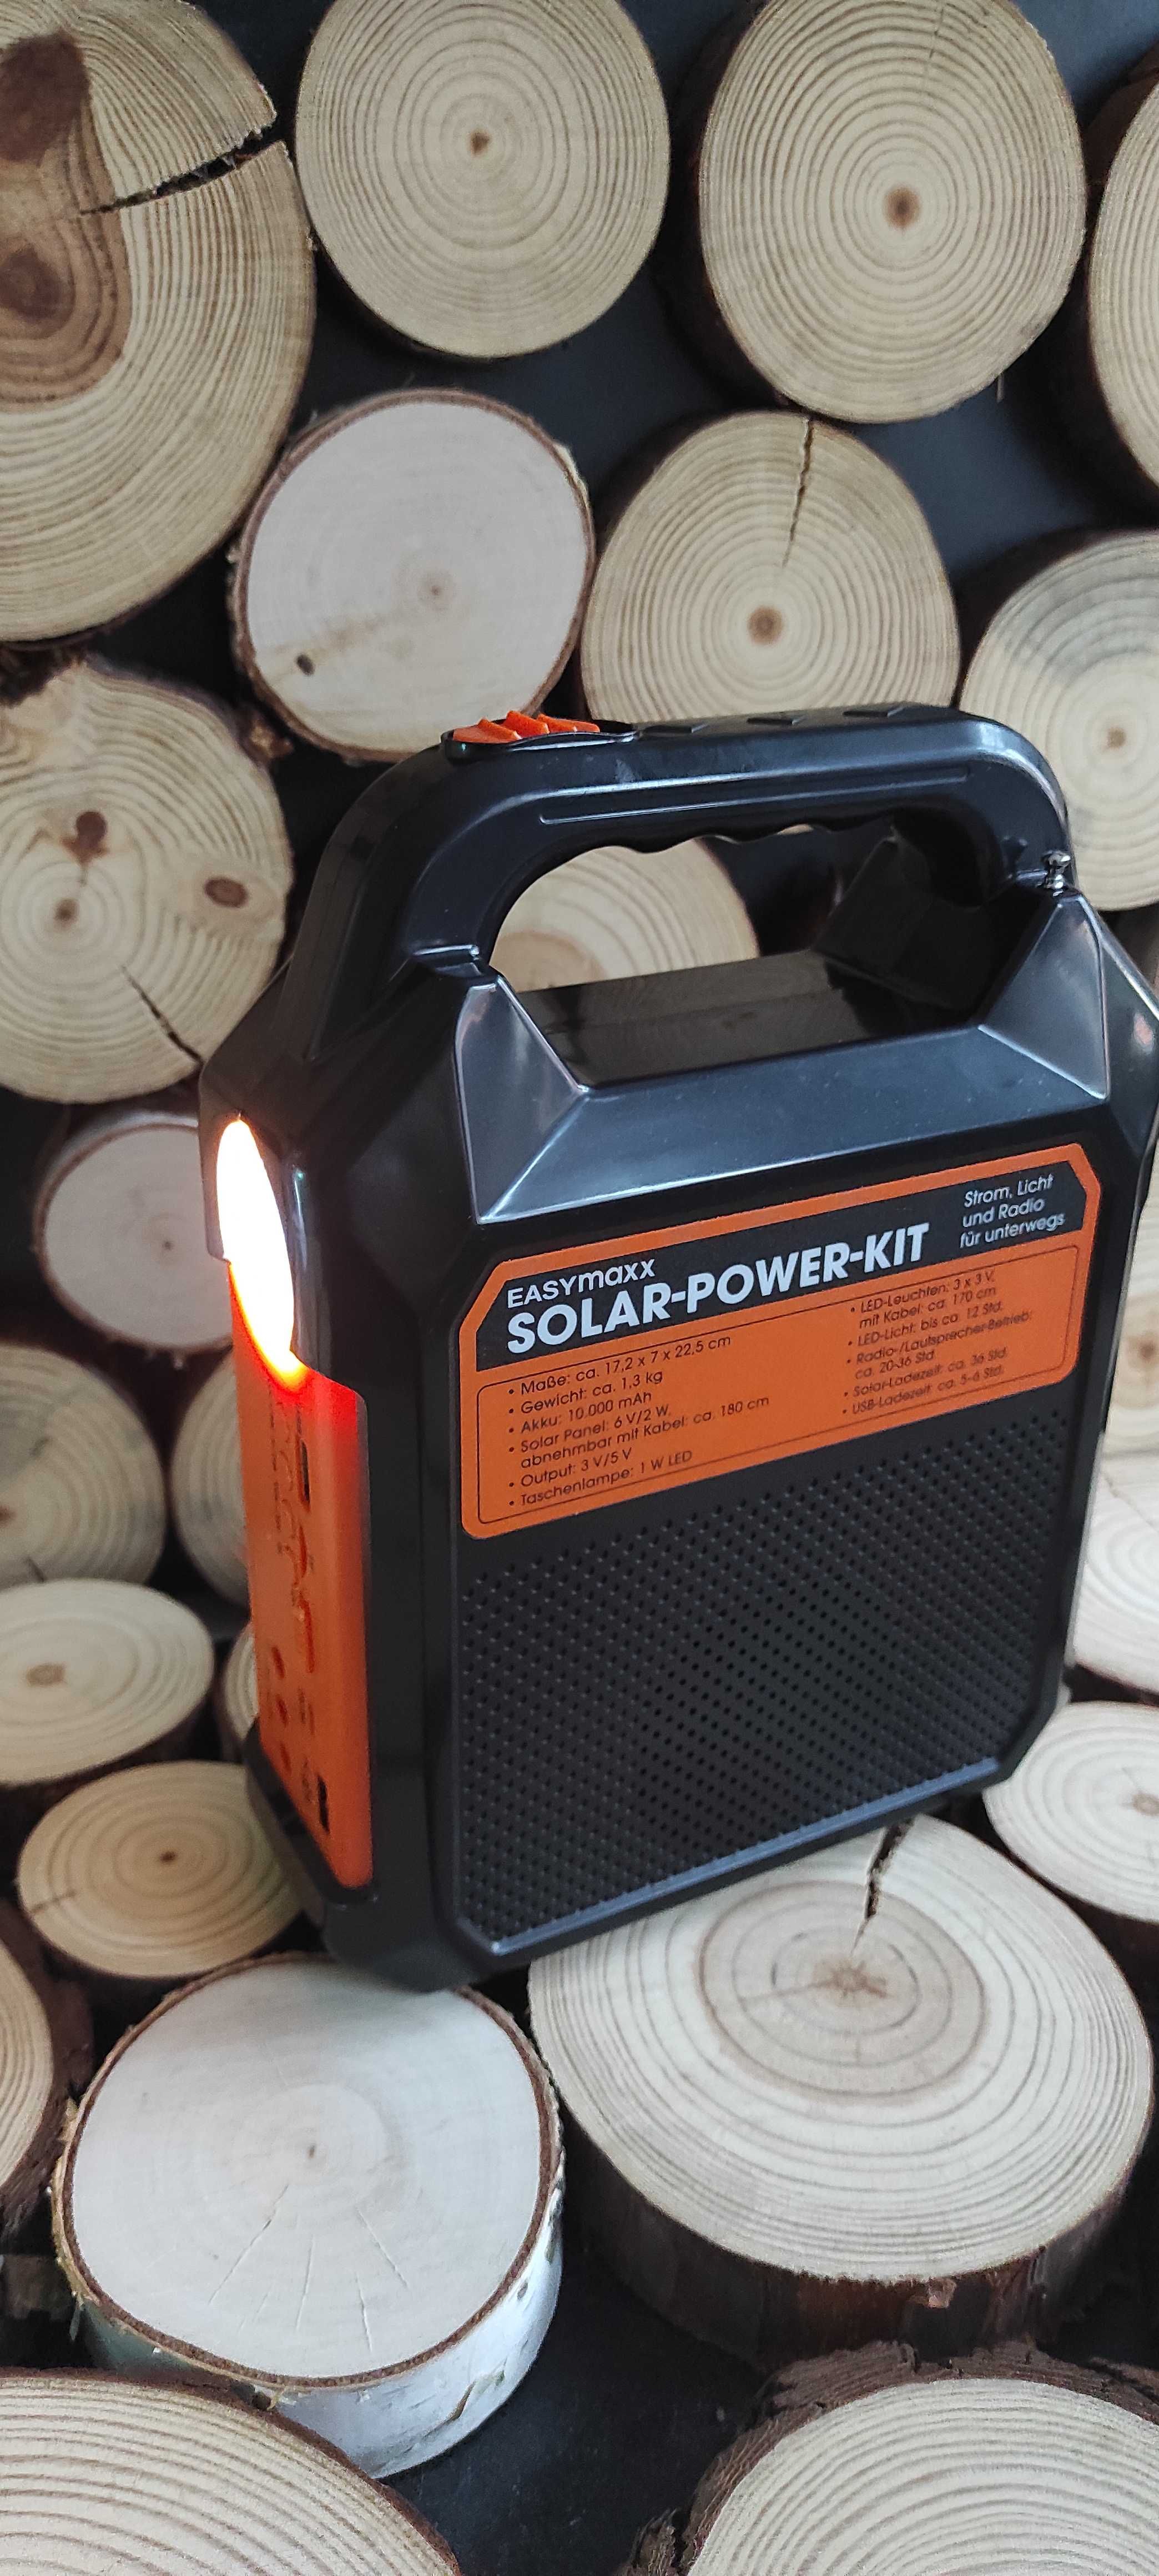 Solar-power-kit solarna latarka , radio i ładowarka.